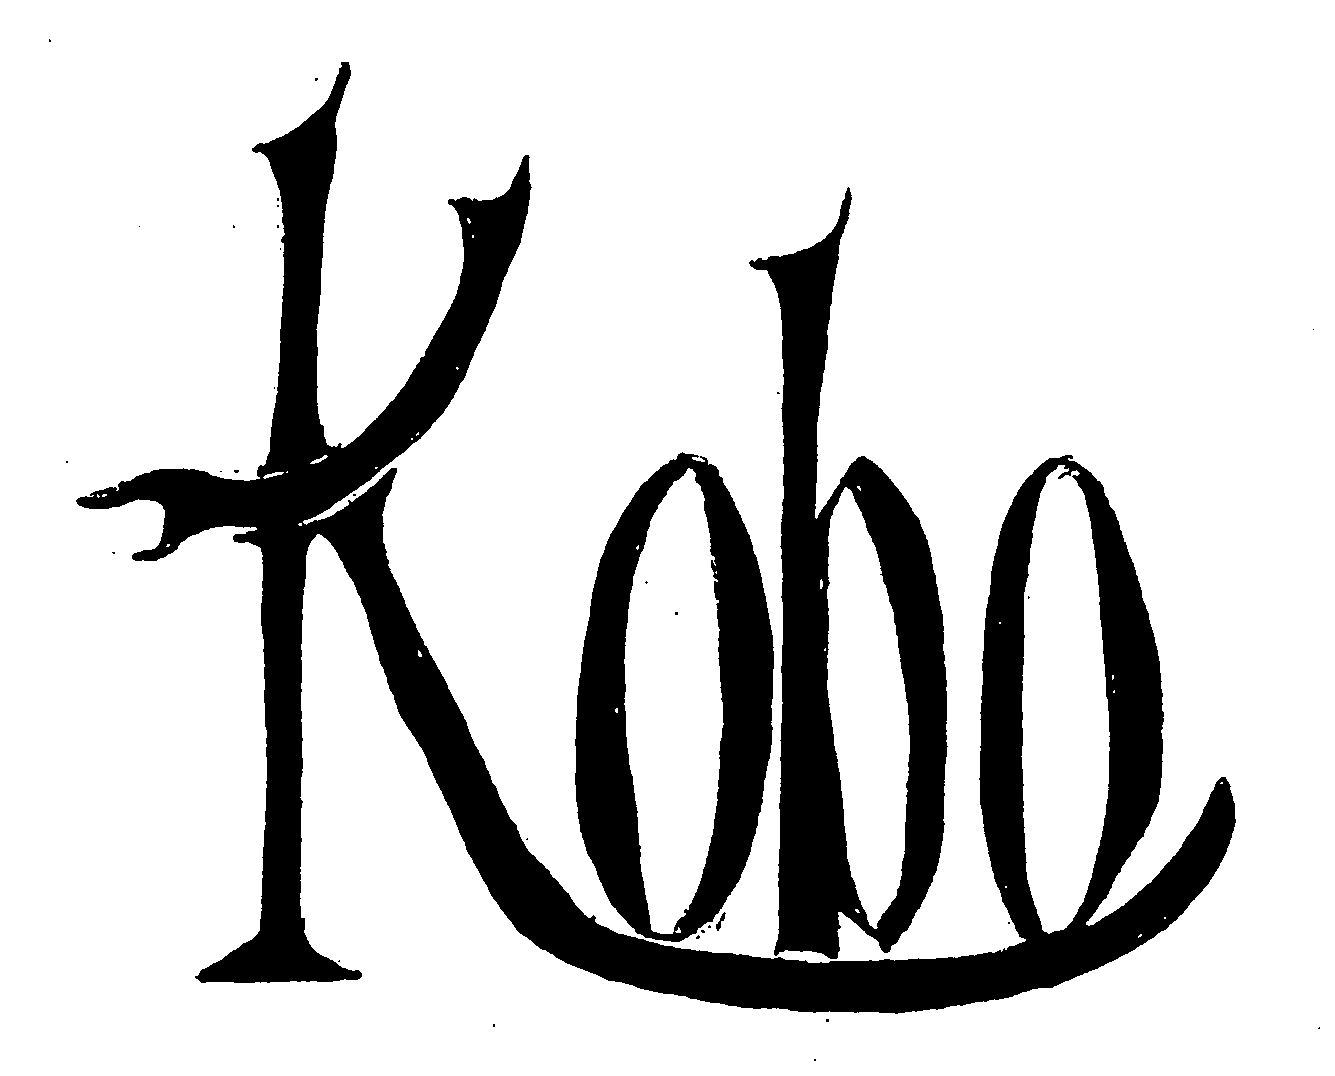 Trademark Logo KOBO